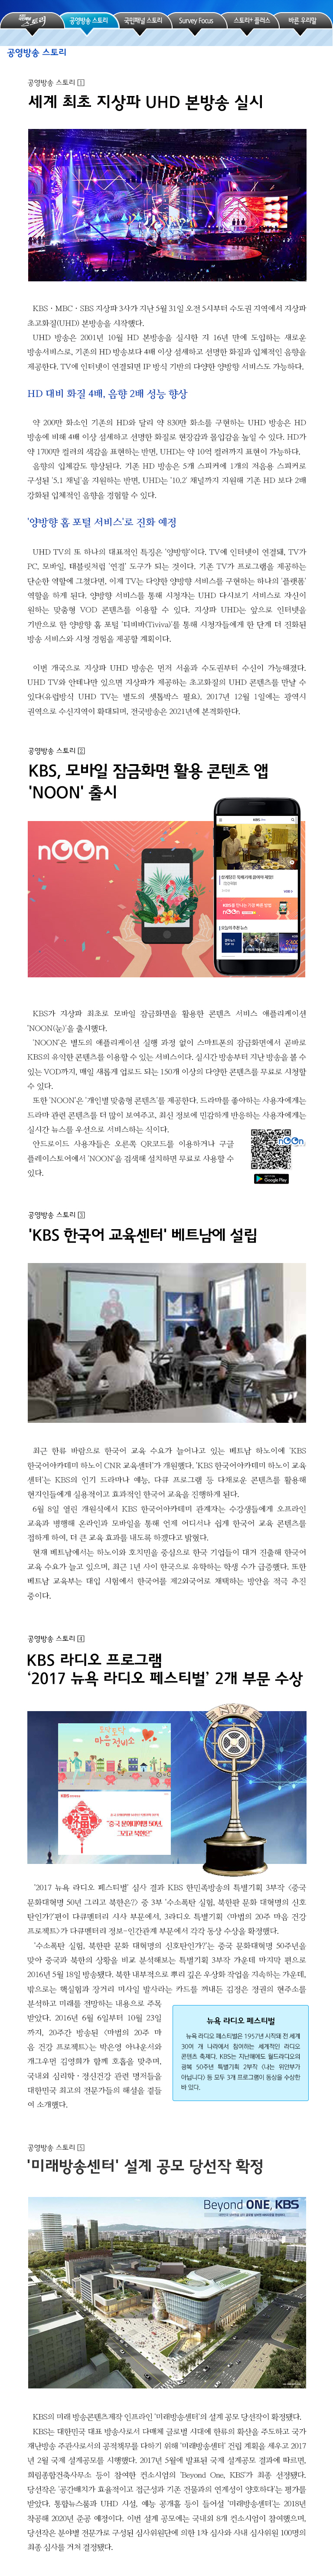 국민패널 - 공영방송 스토리